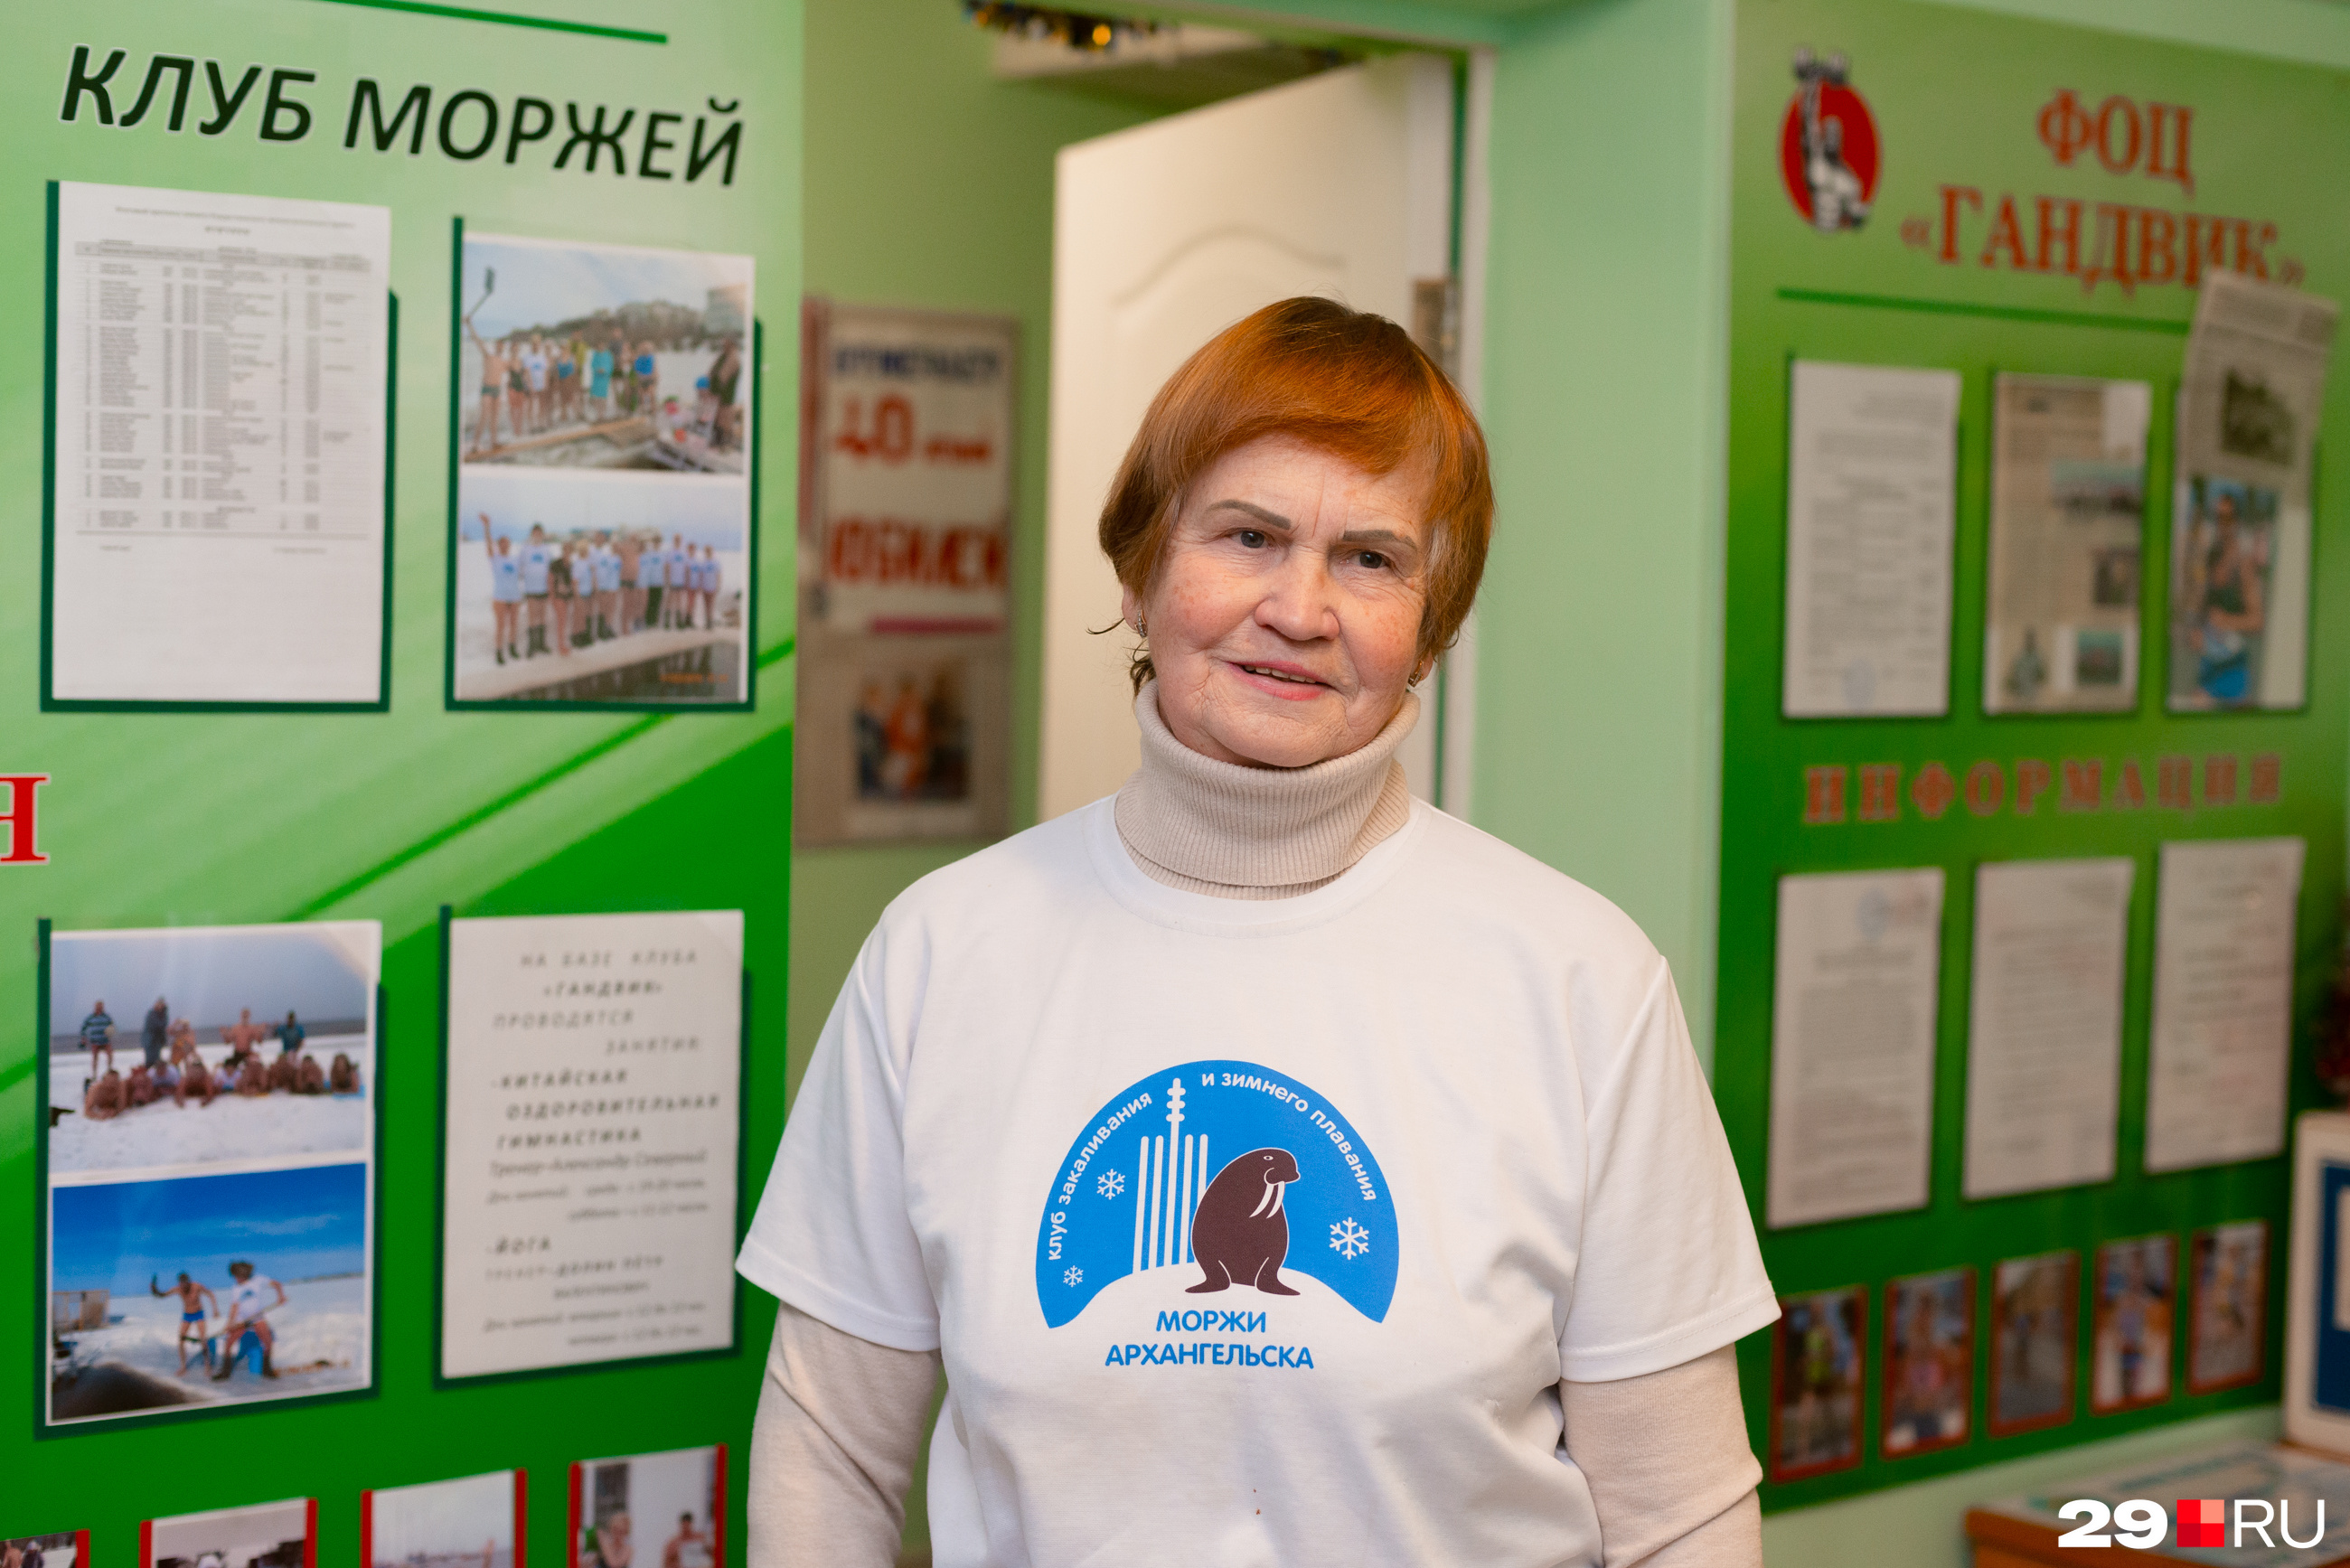 Анна Карельская занимается моржеванием уже почти 35 лет